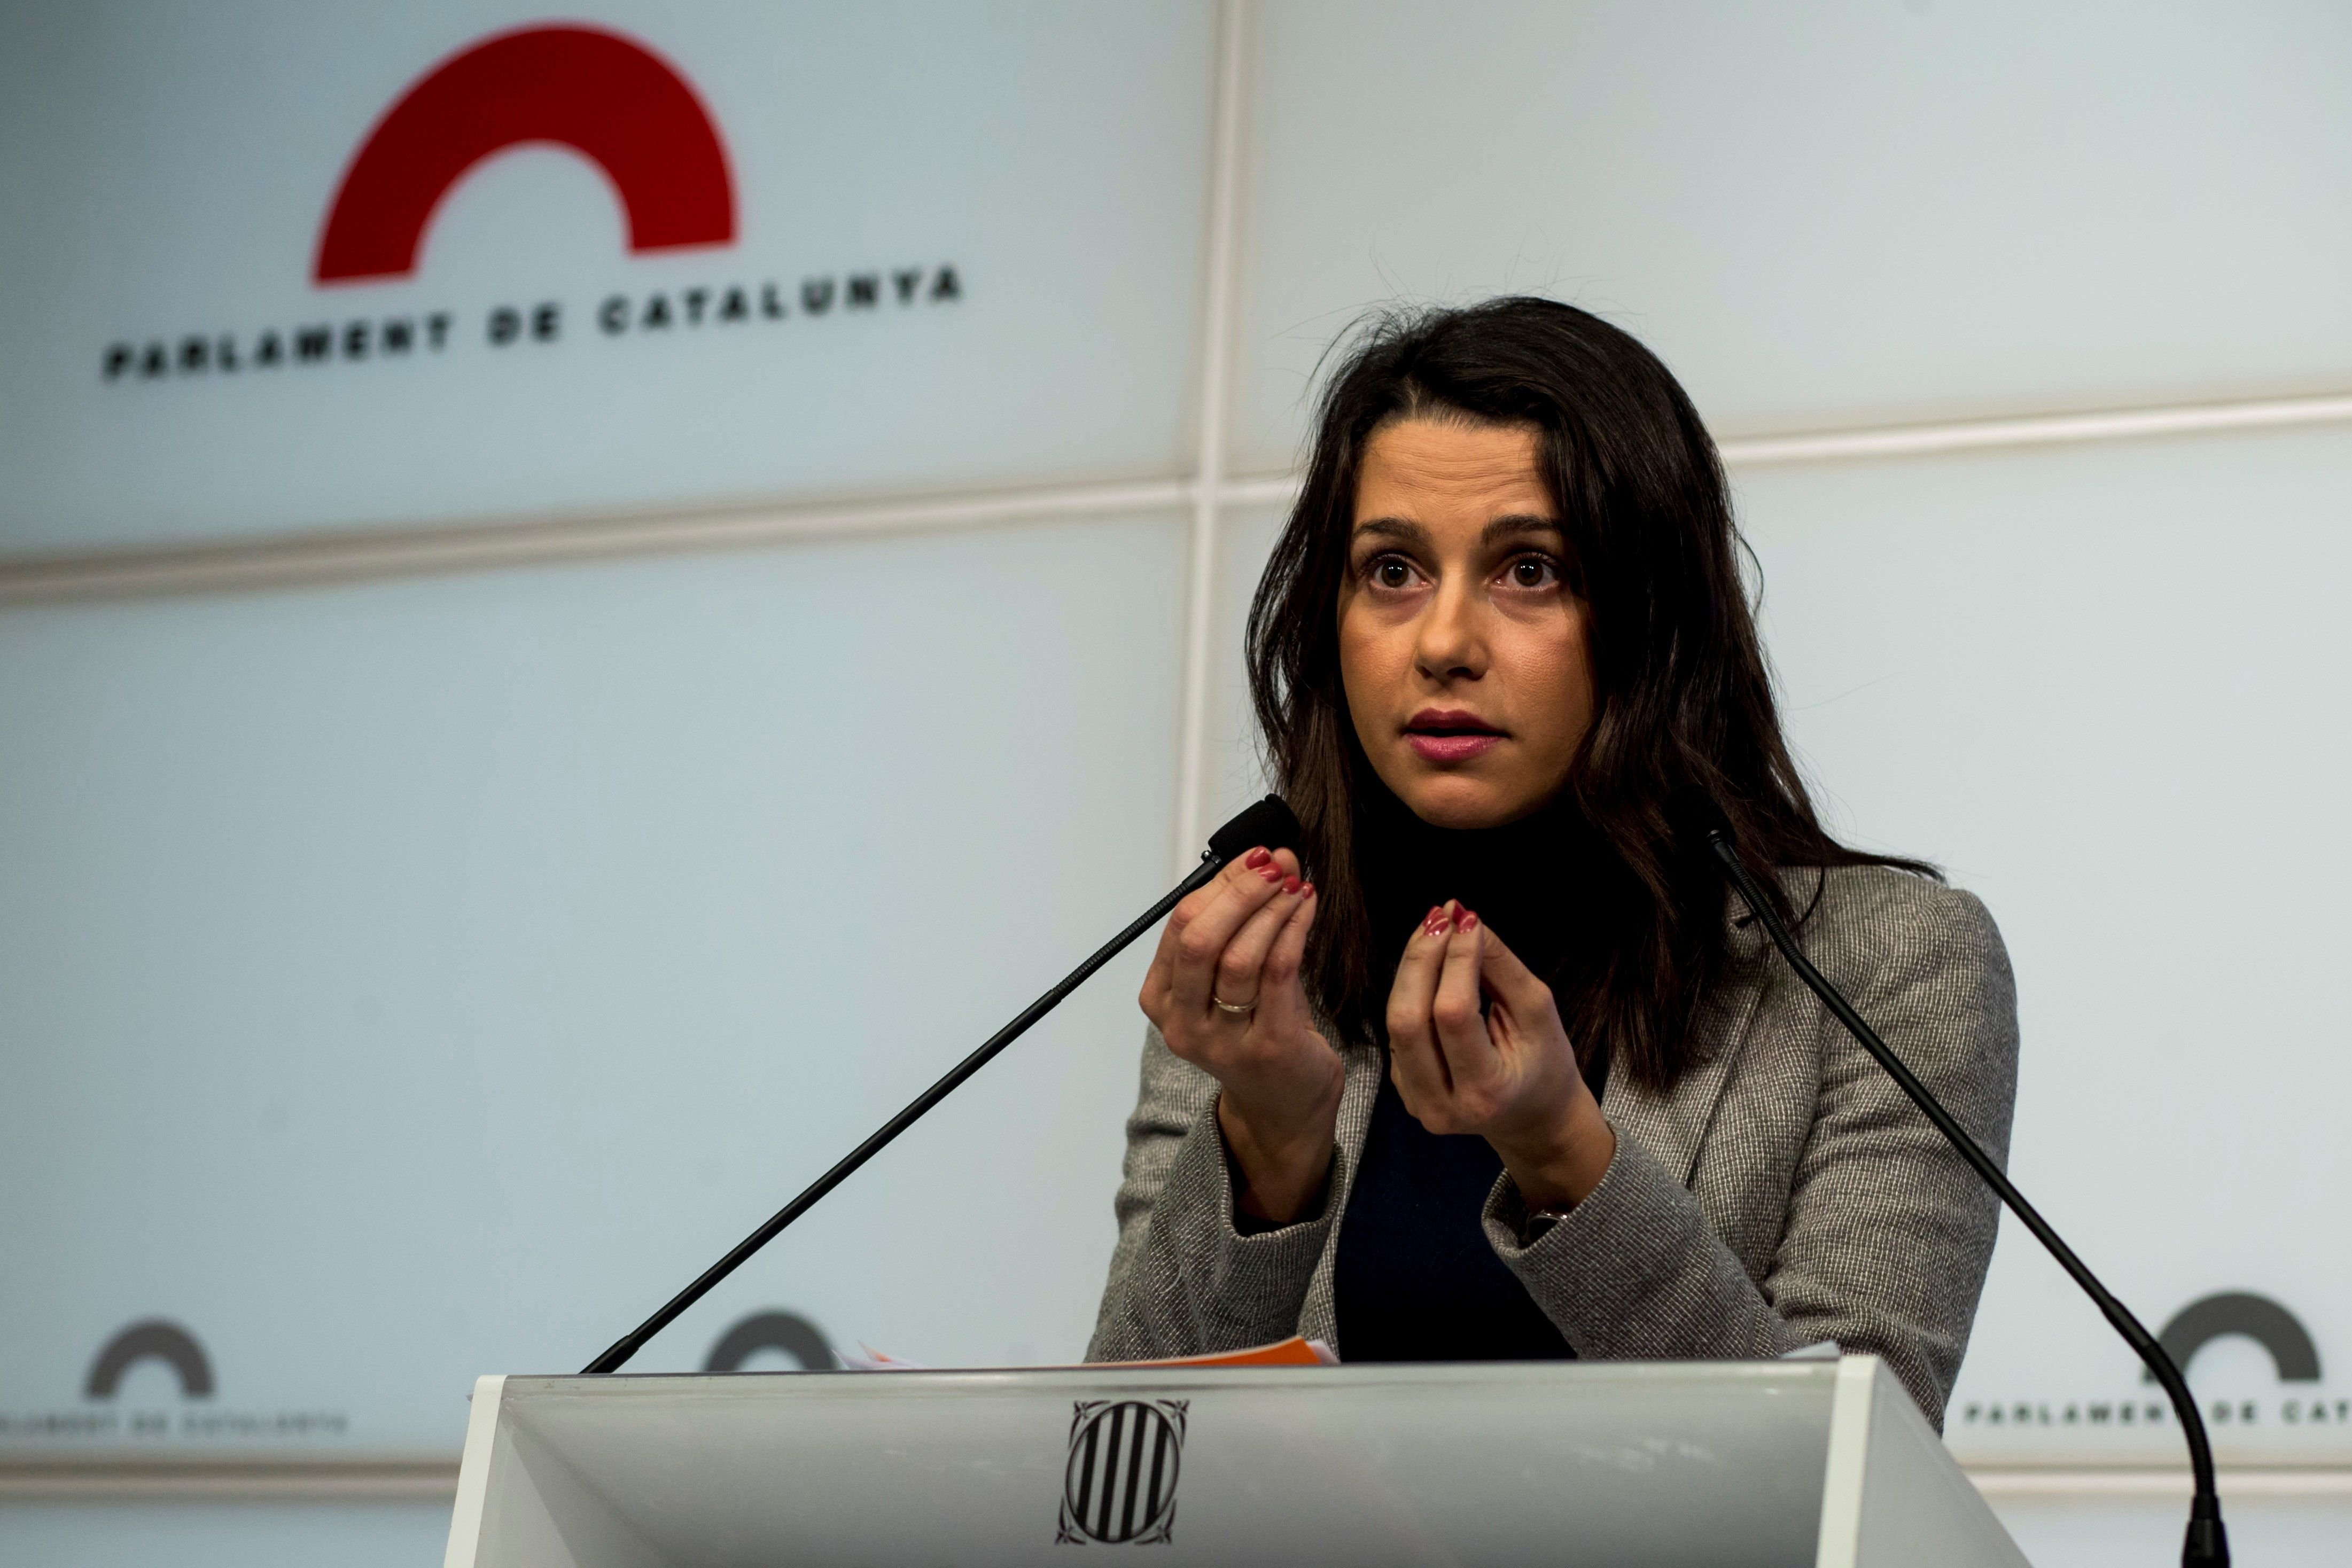 Arrimadas s'ha plantejat aquests dies abandonar la política, segons 'La Razón'